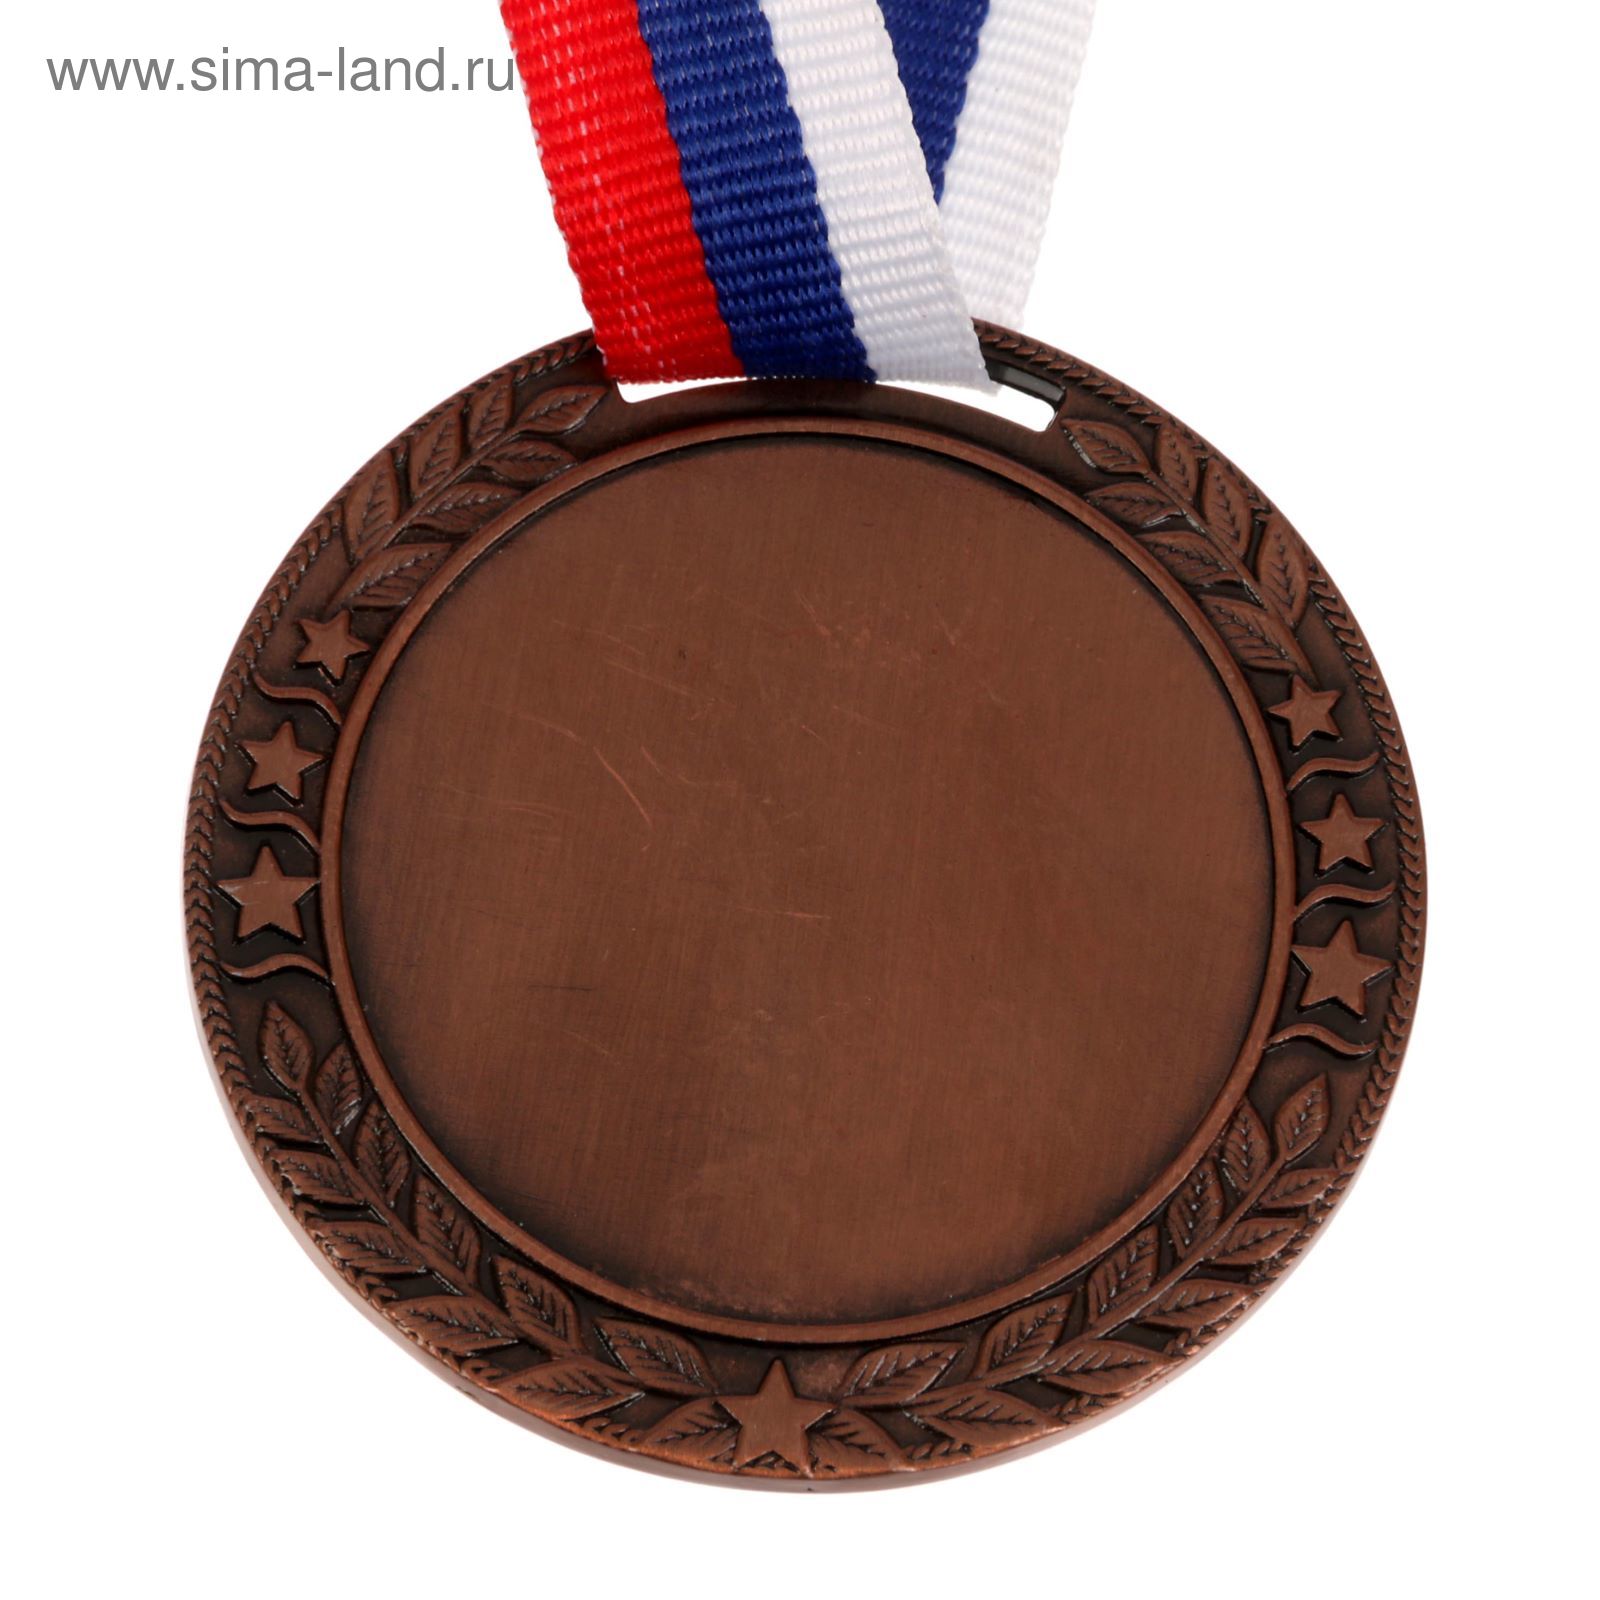 Медали награды купить. Бронзовая медаль. Медали спортивные. Сувенирные медали. Медаль из бронзы.